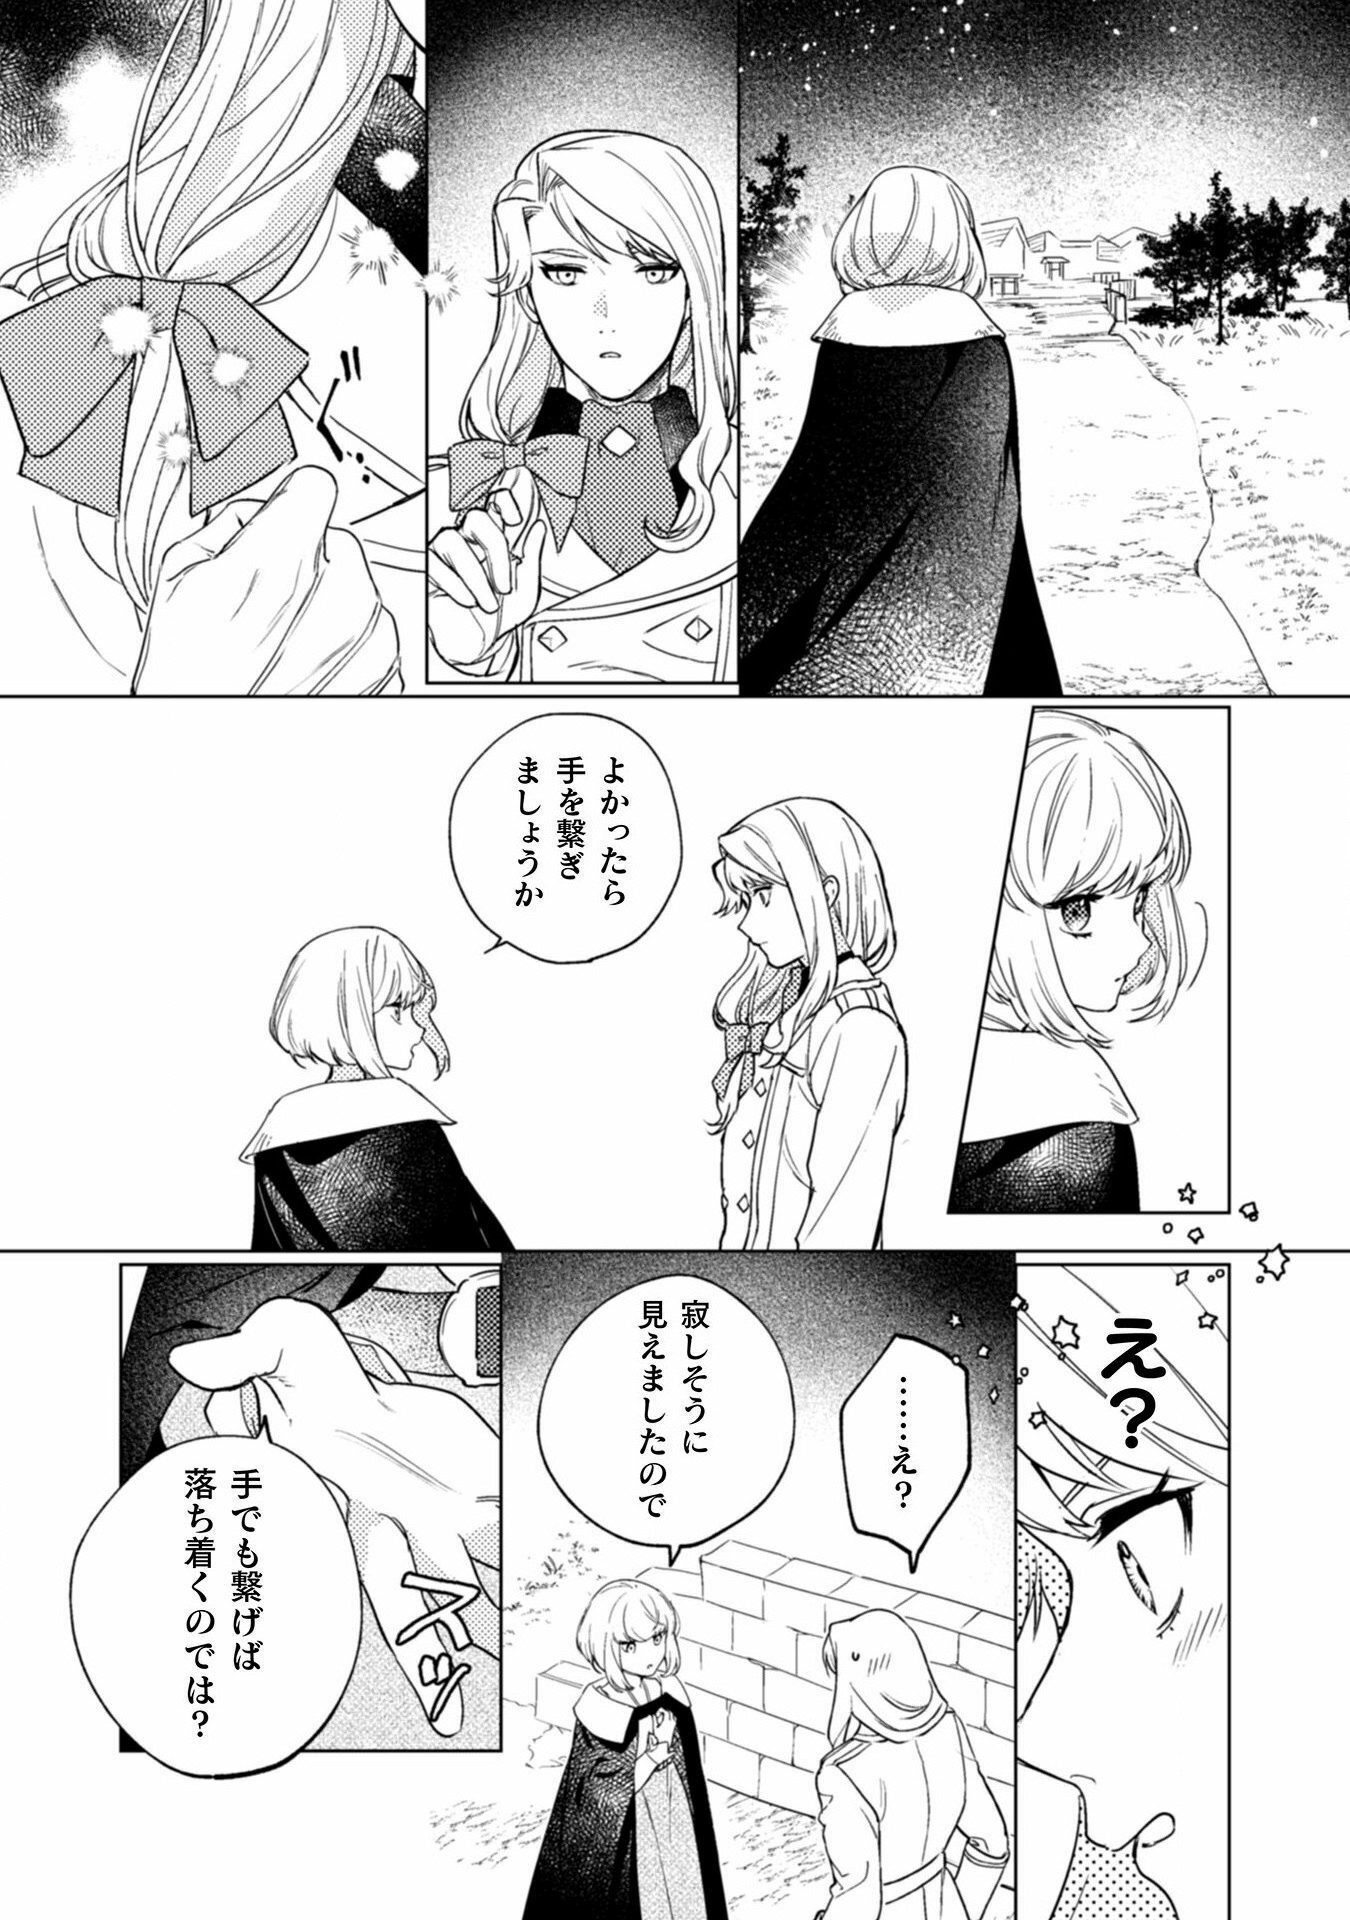 Uranaishi ni wa Hana Kishi no Koigokoro ga Mieteimasu - Chapter 19 - Page 2